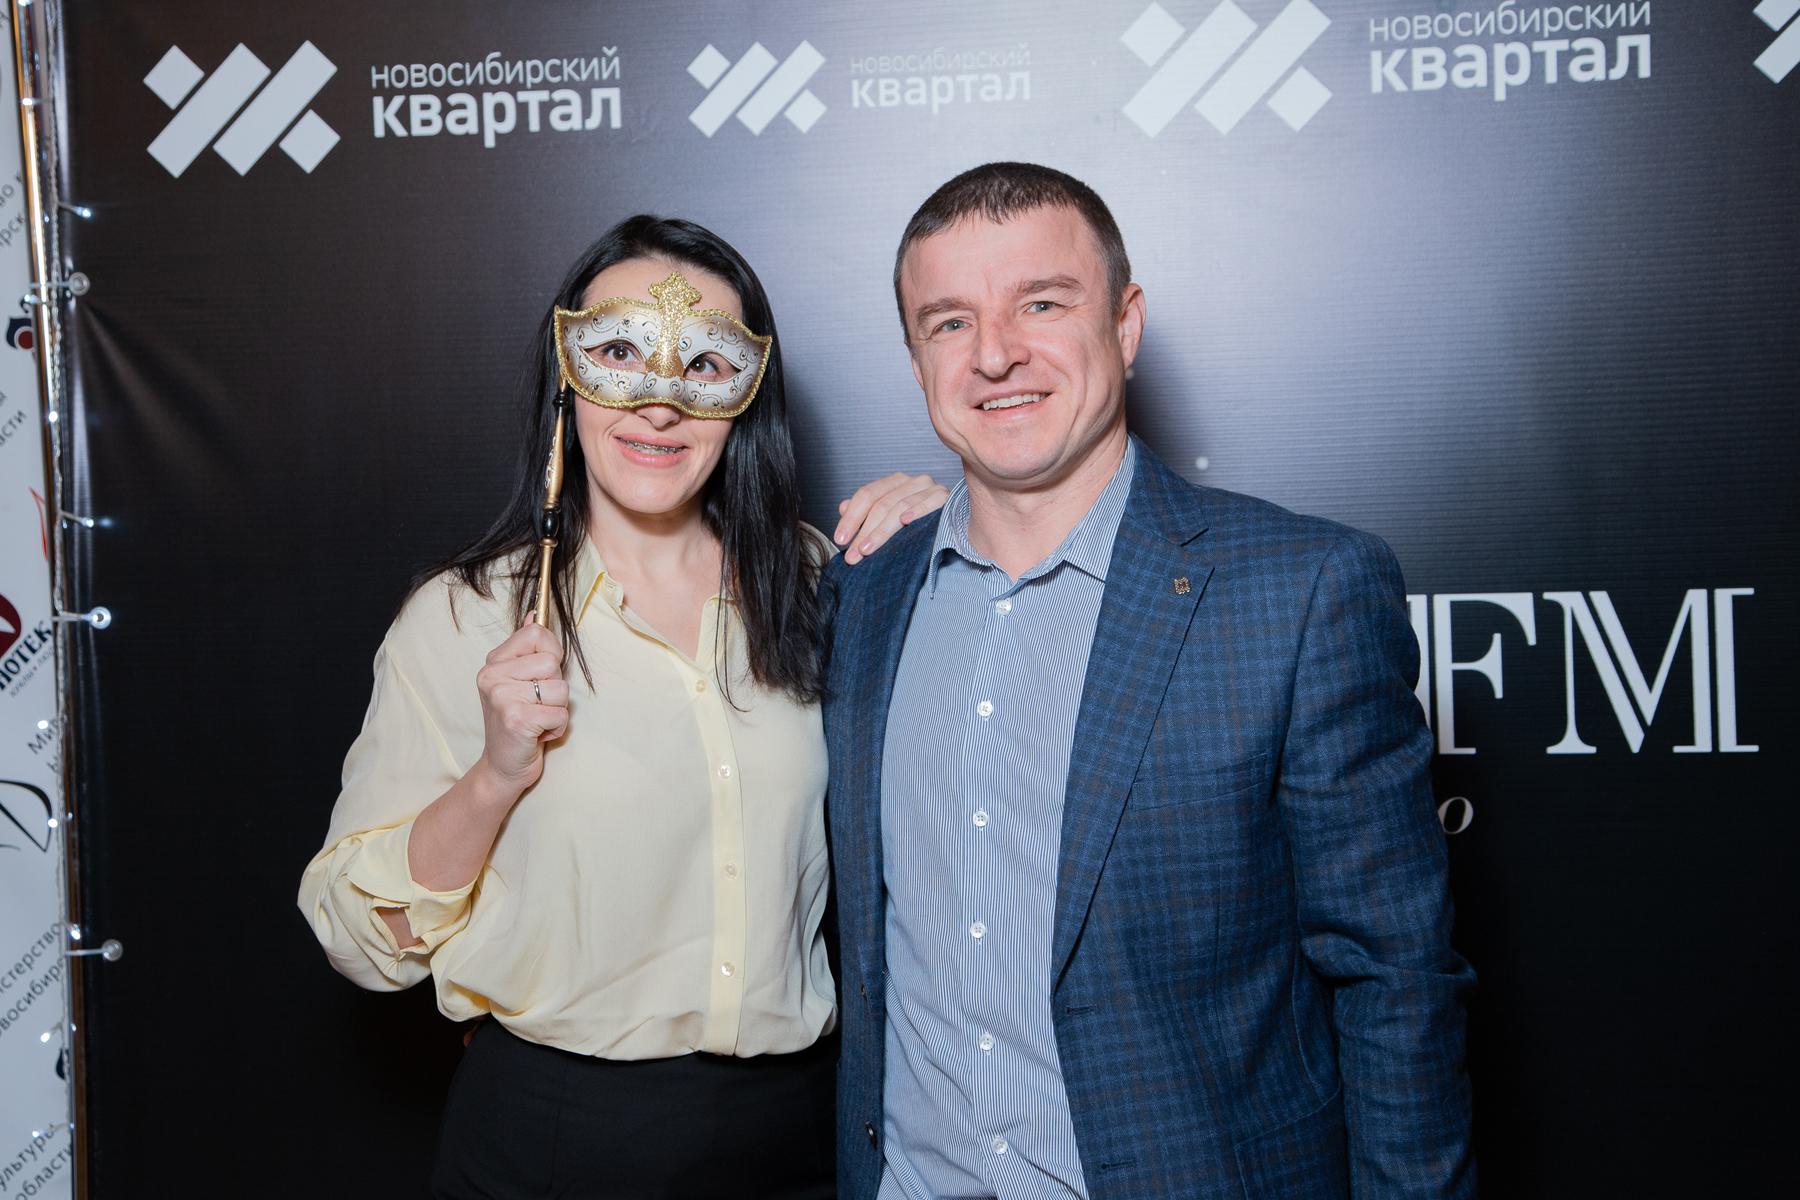 Фото Радиостанция Business FM в Новосибирске отметила 11 лет в эфире 4